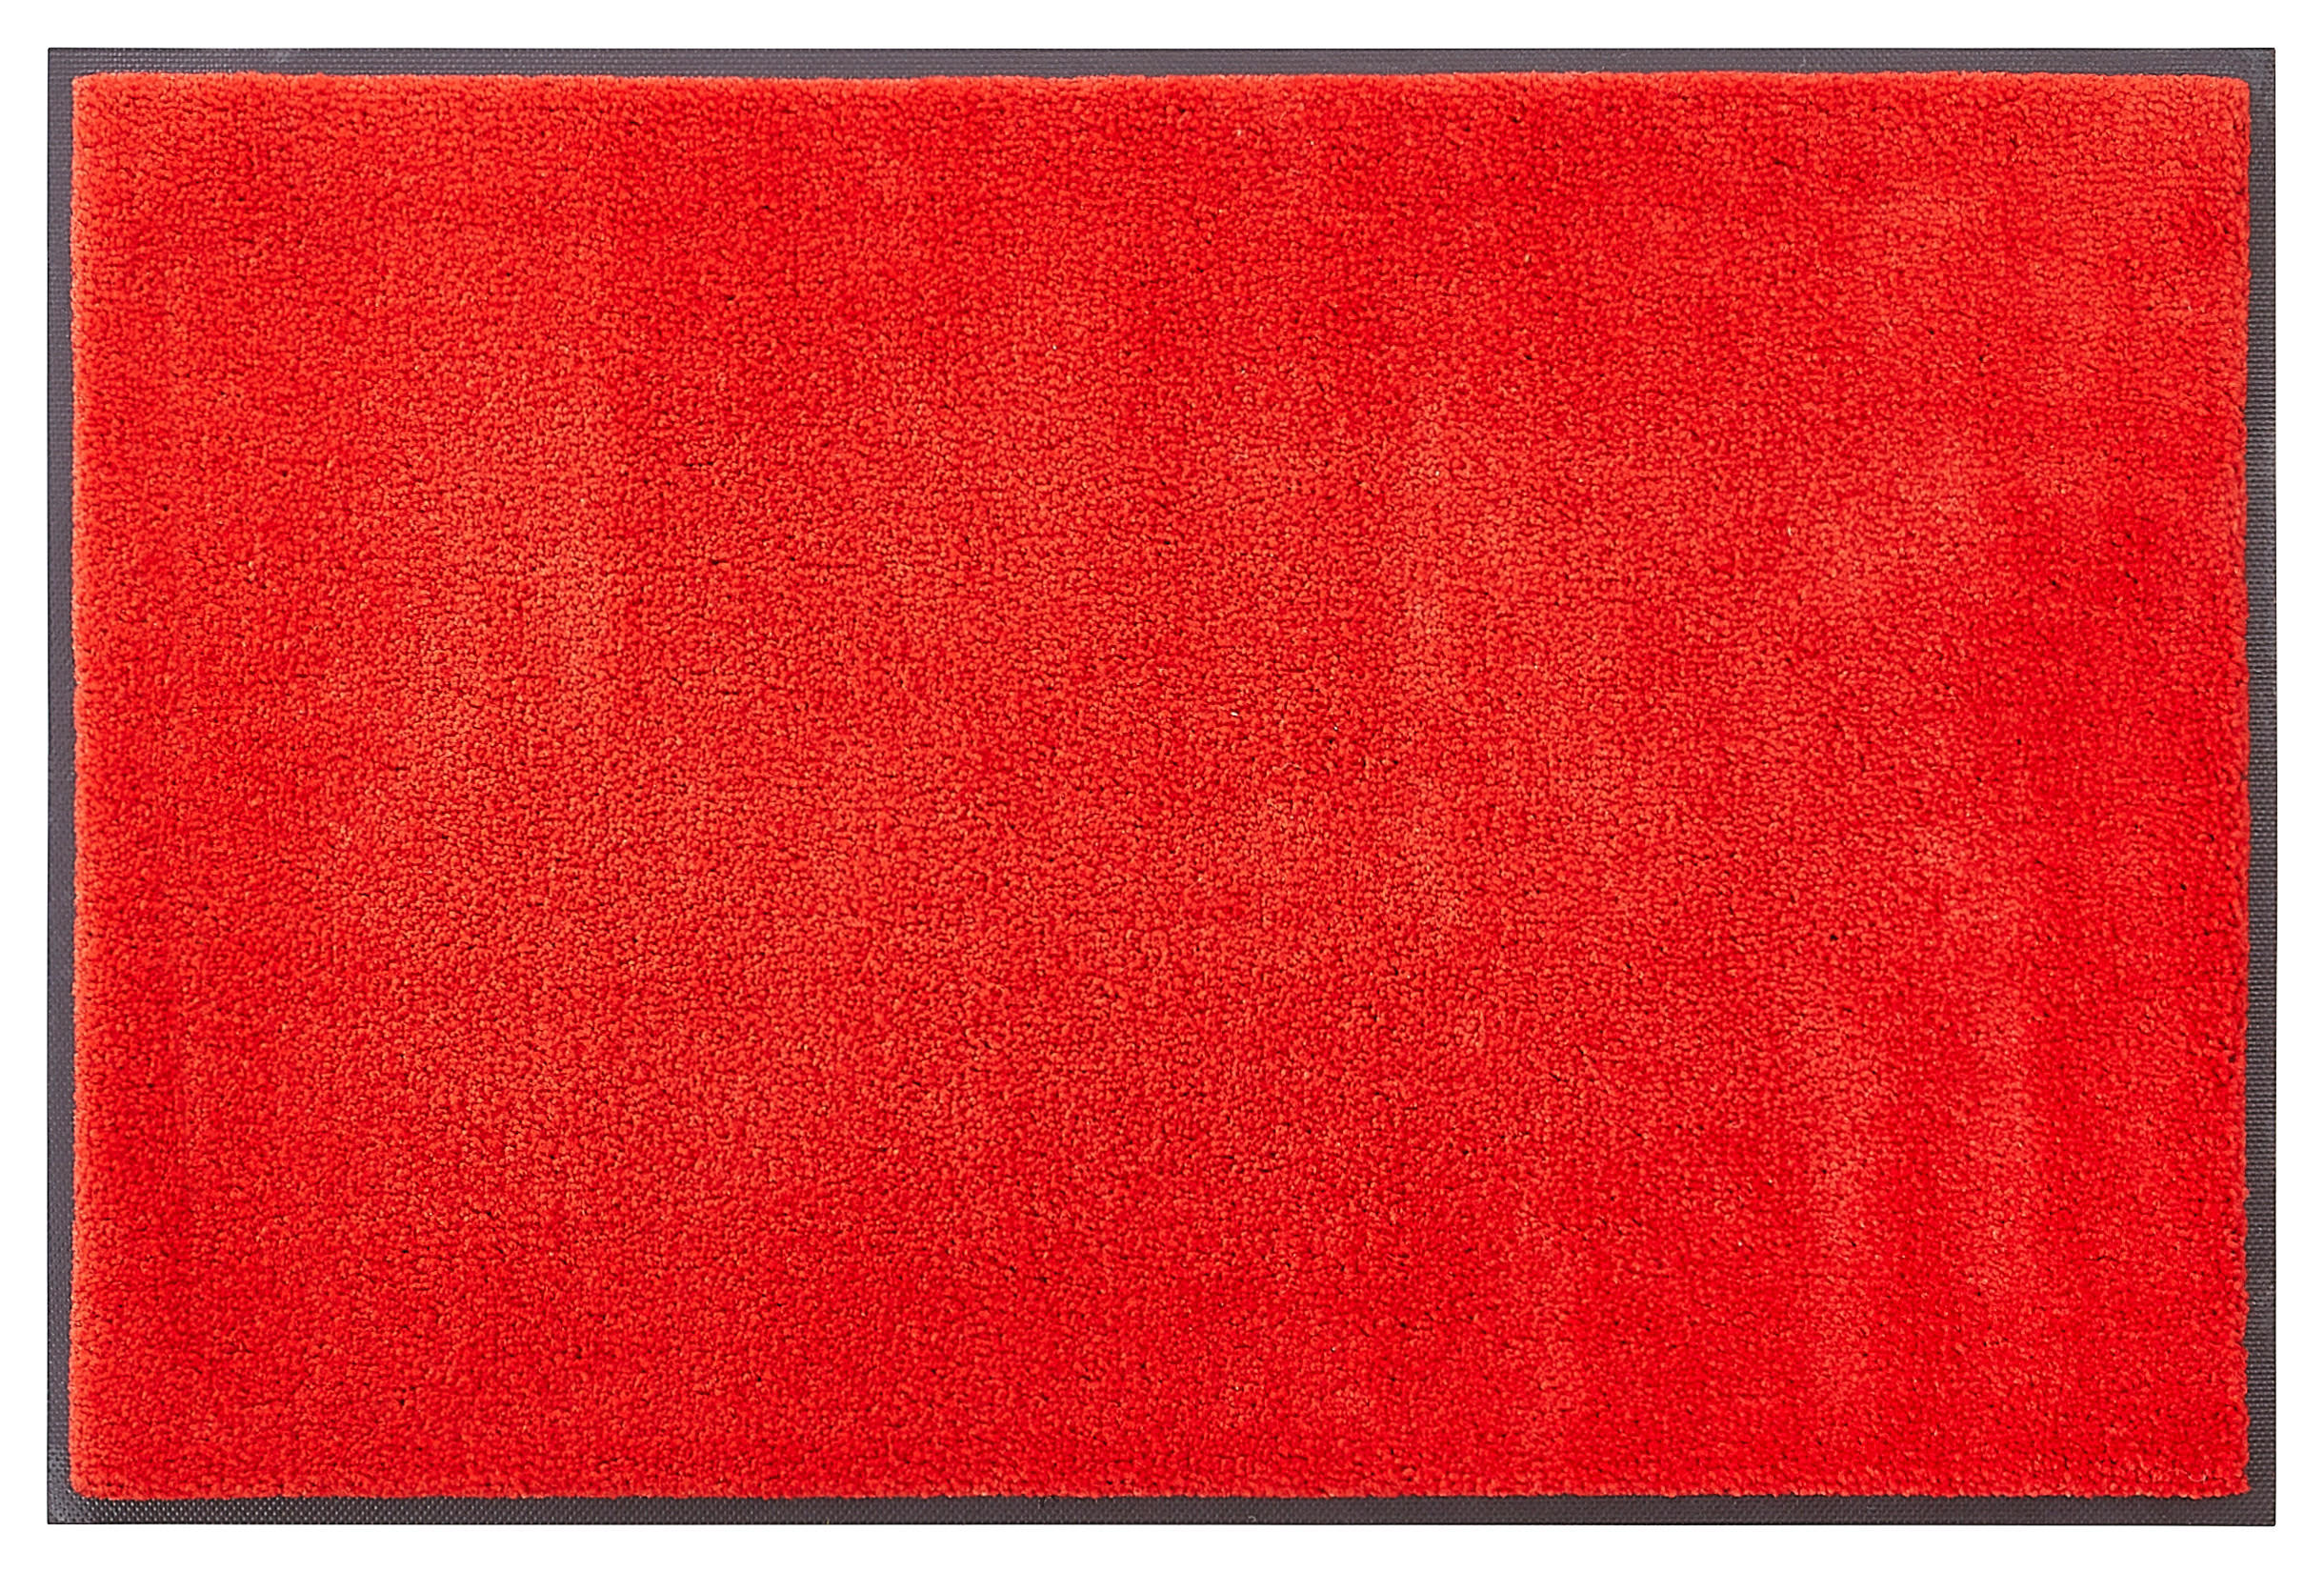 FUßMATTE  40/60 cm  Rot  - Rot, Basics, Kunststoff/Textil (40/60cm) - Esposa